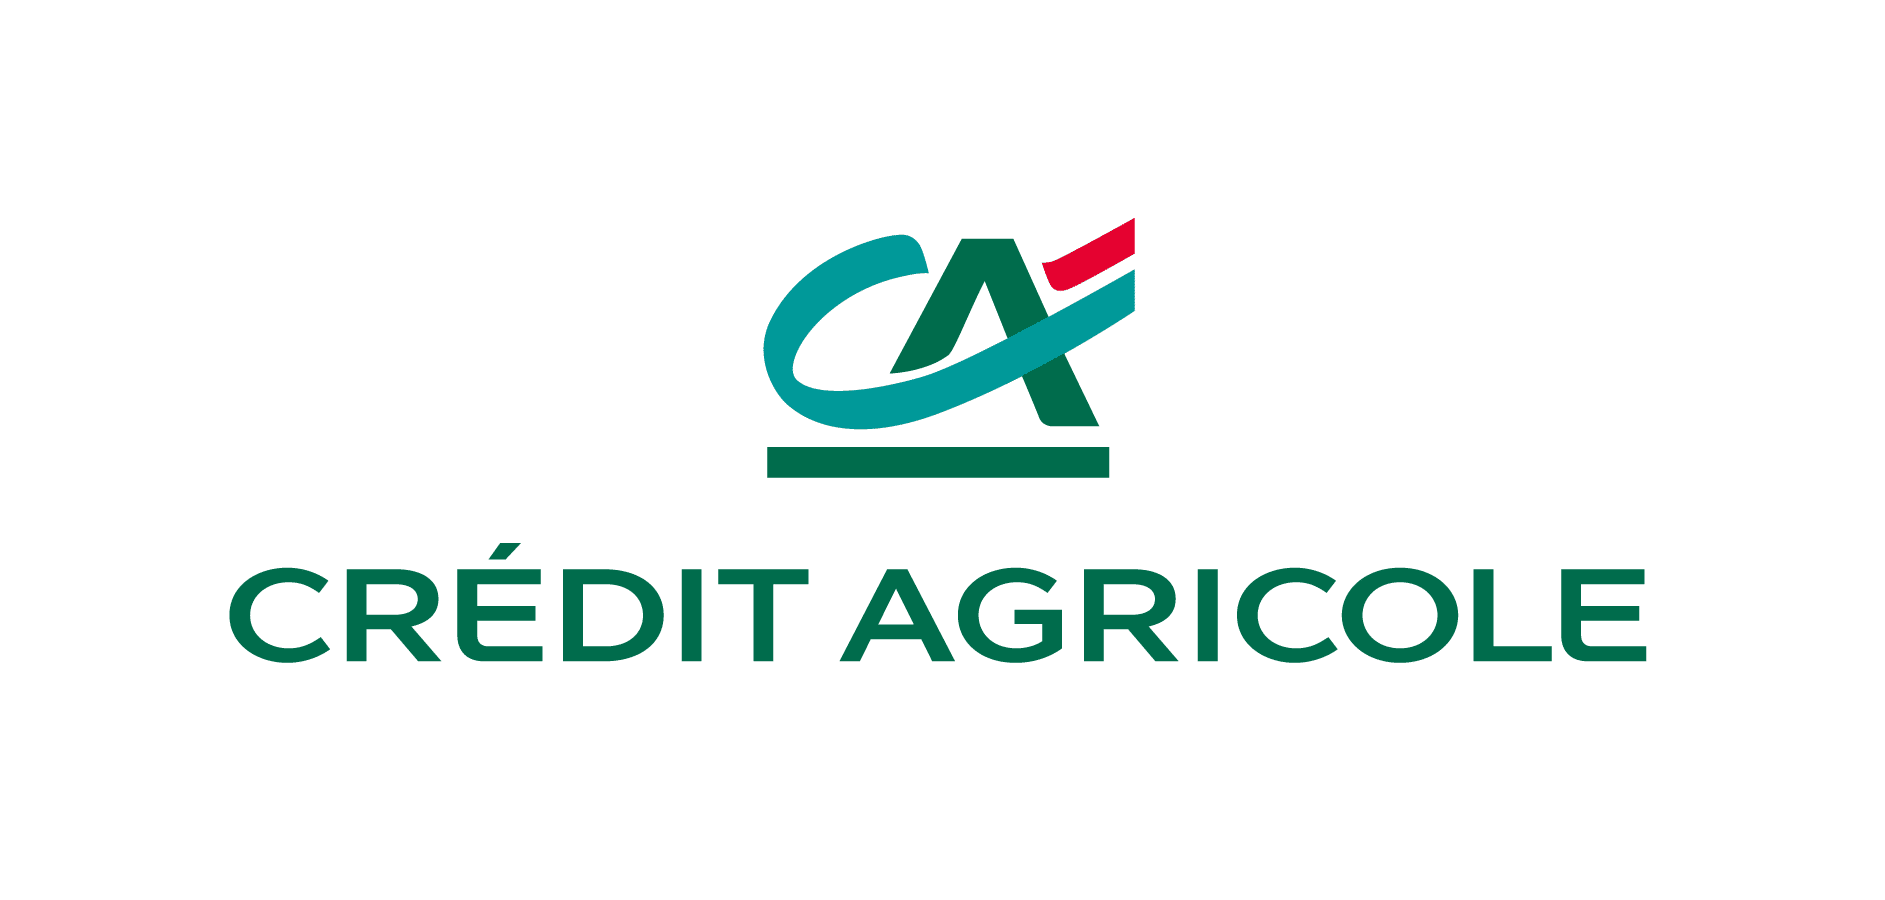 acheter des actions credit agricole